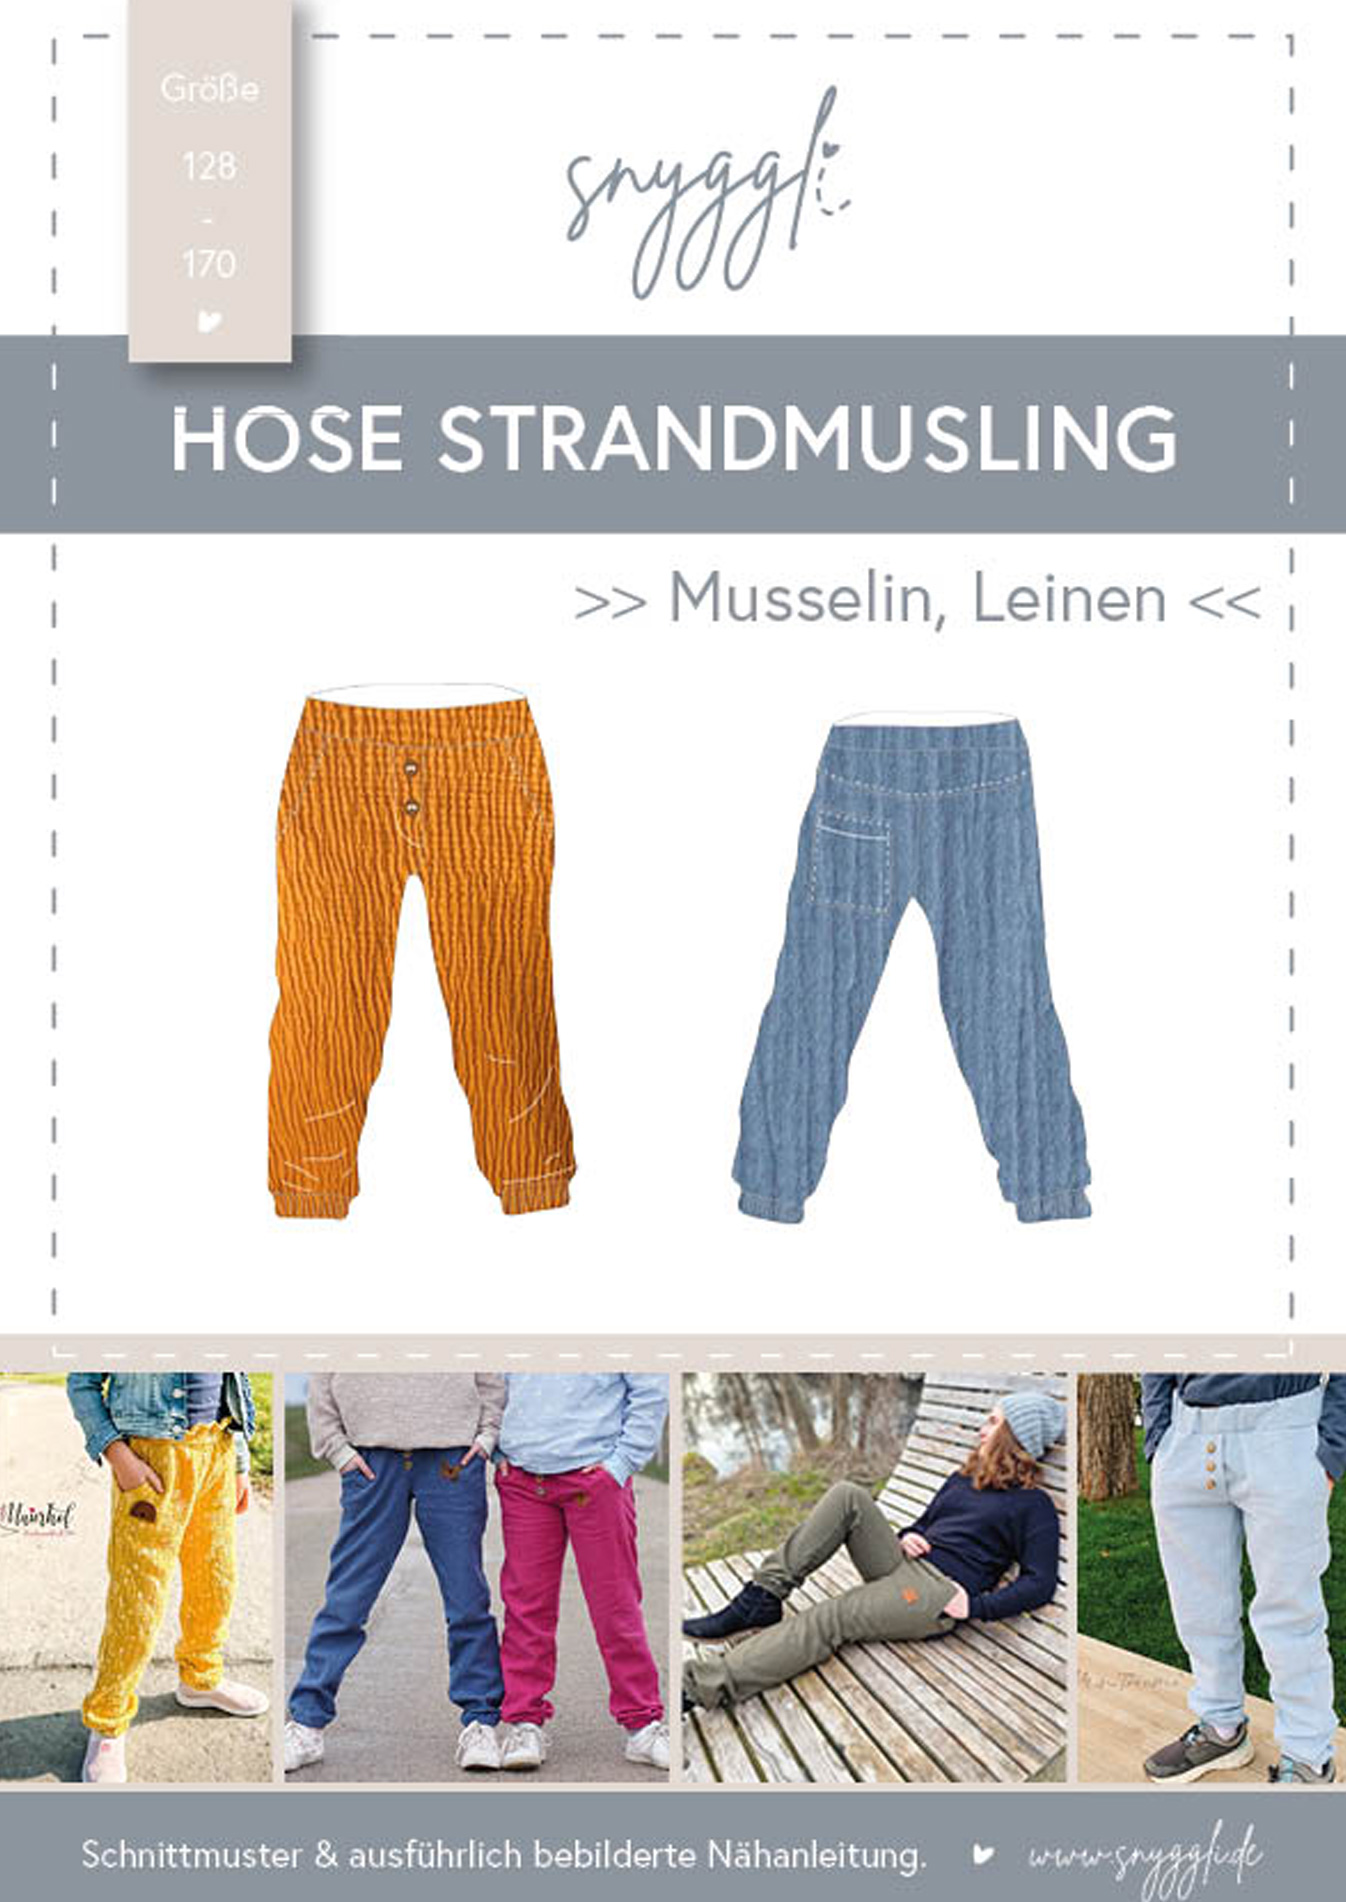 Snyggli-Musselin-Hose-Strandmusling-Schnittmuster-Leinen-Teens-Kinder-Sommer-Gr-128-170-Cover